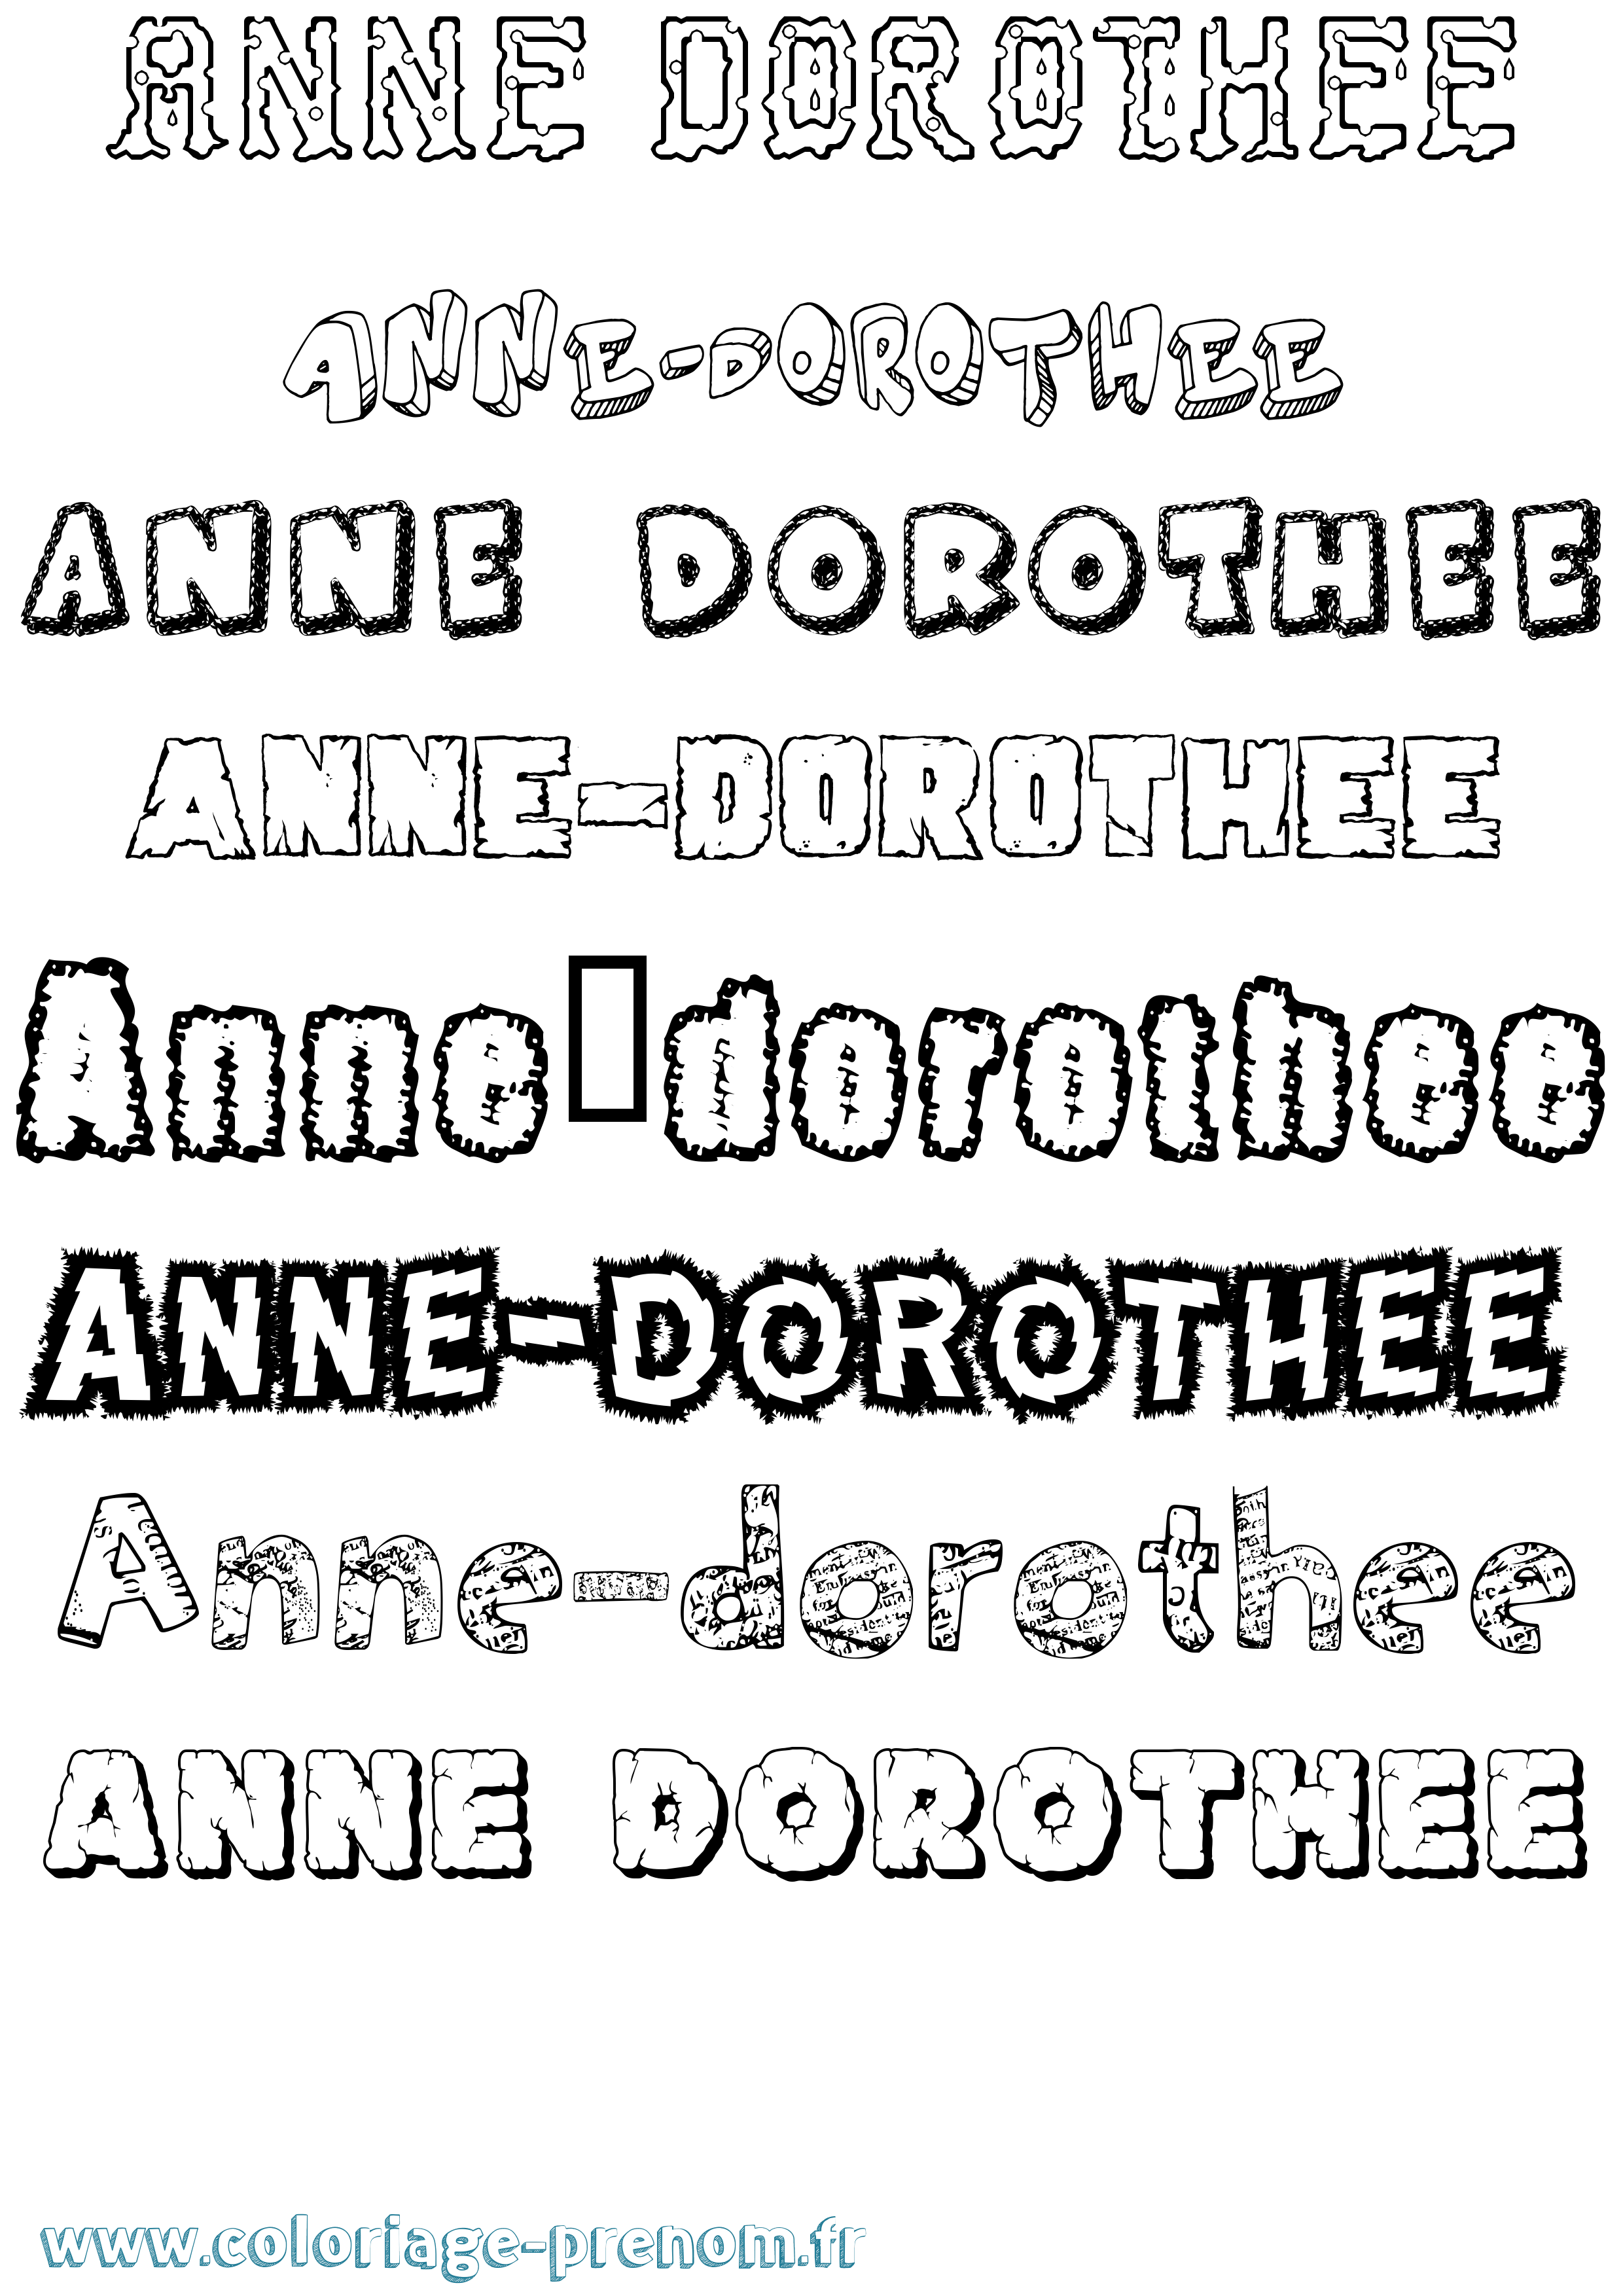 Coloriage prénom Anne-Dorothee Destructuré